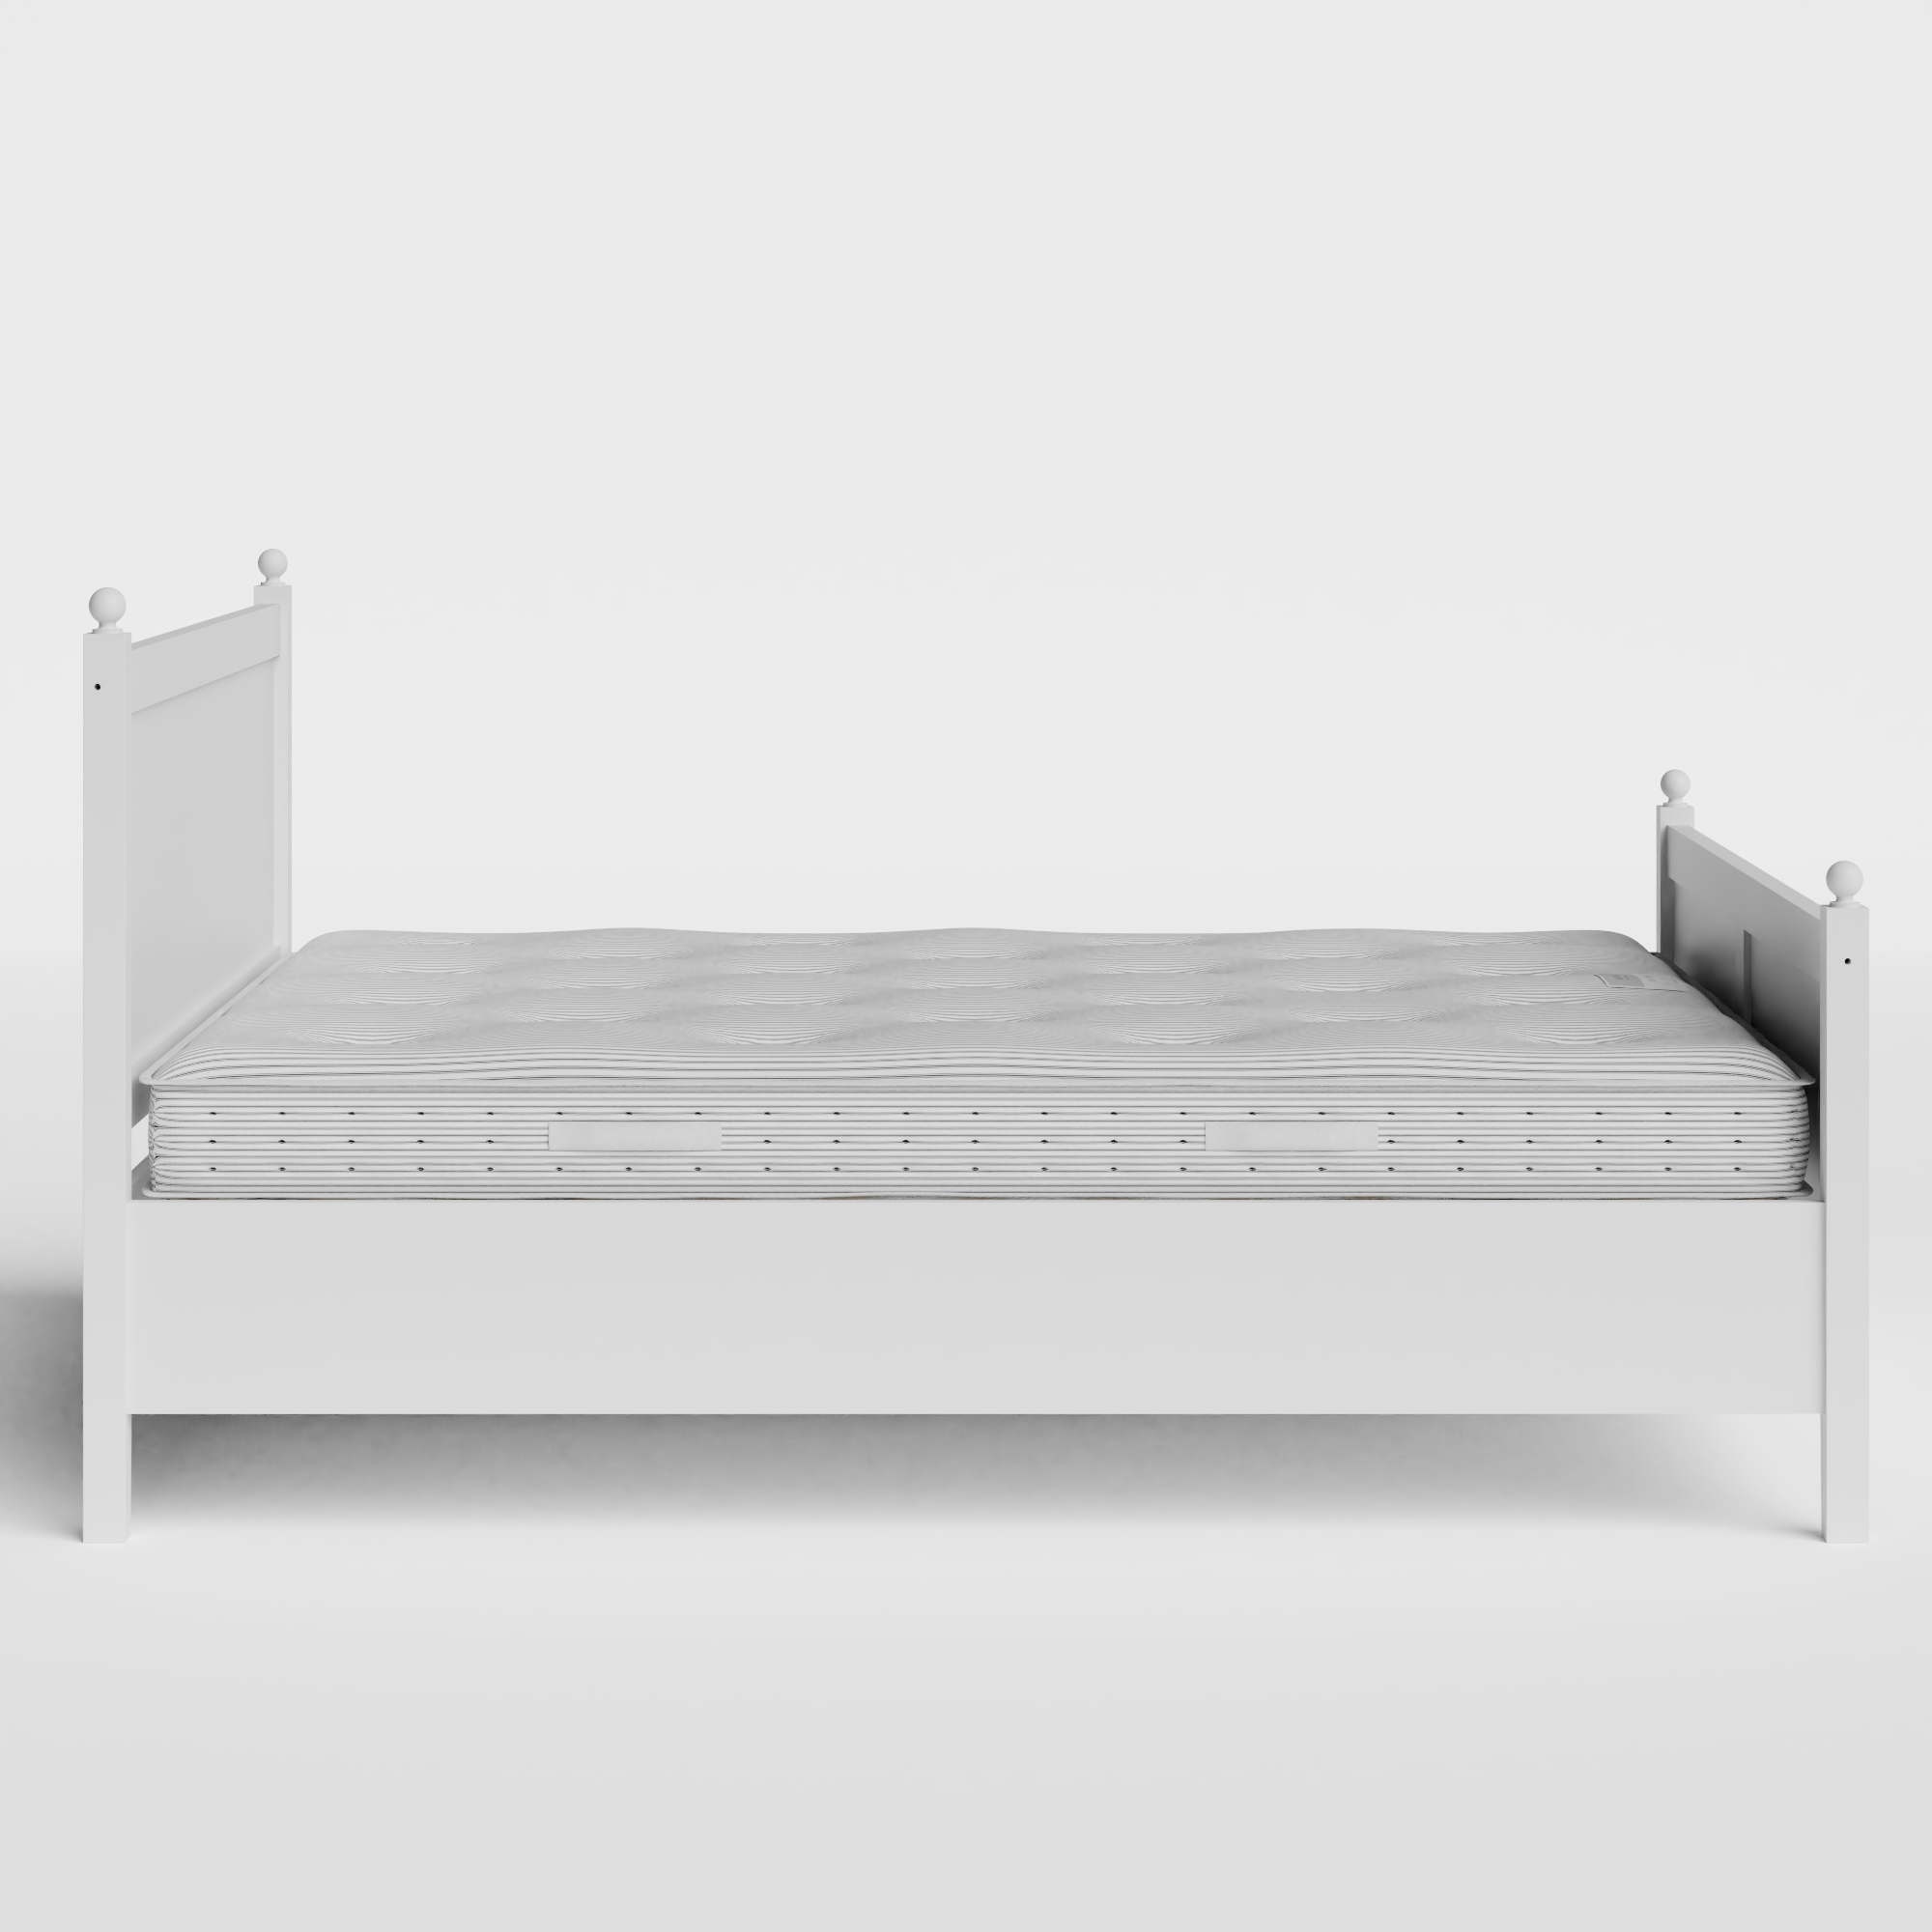 Marbella Painted letto in legno bianco con materasso